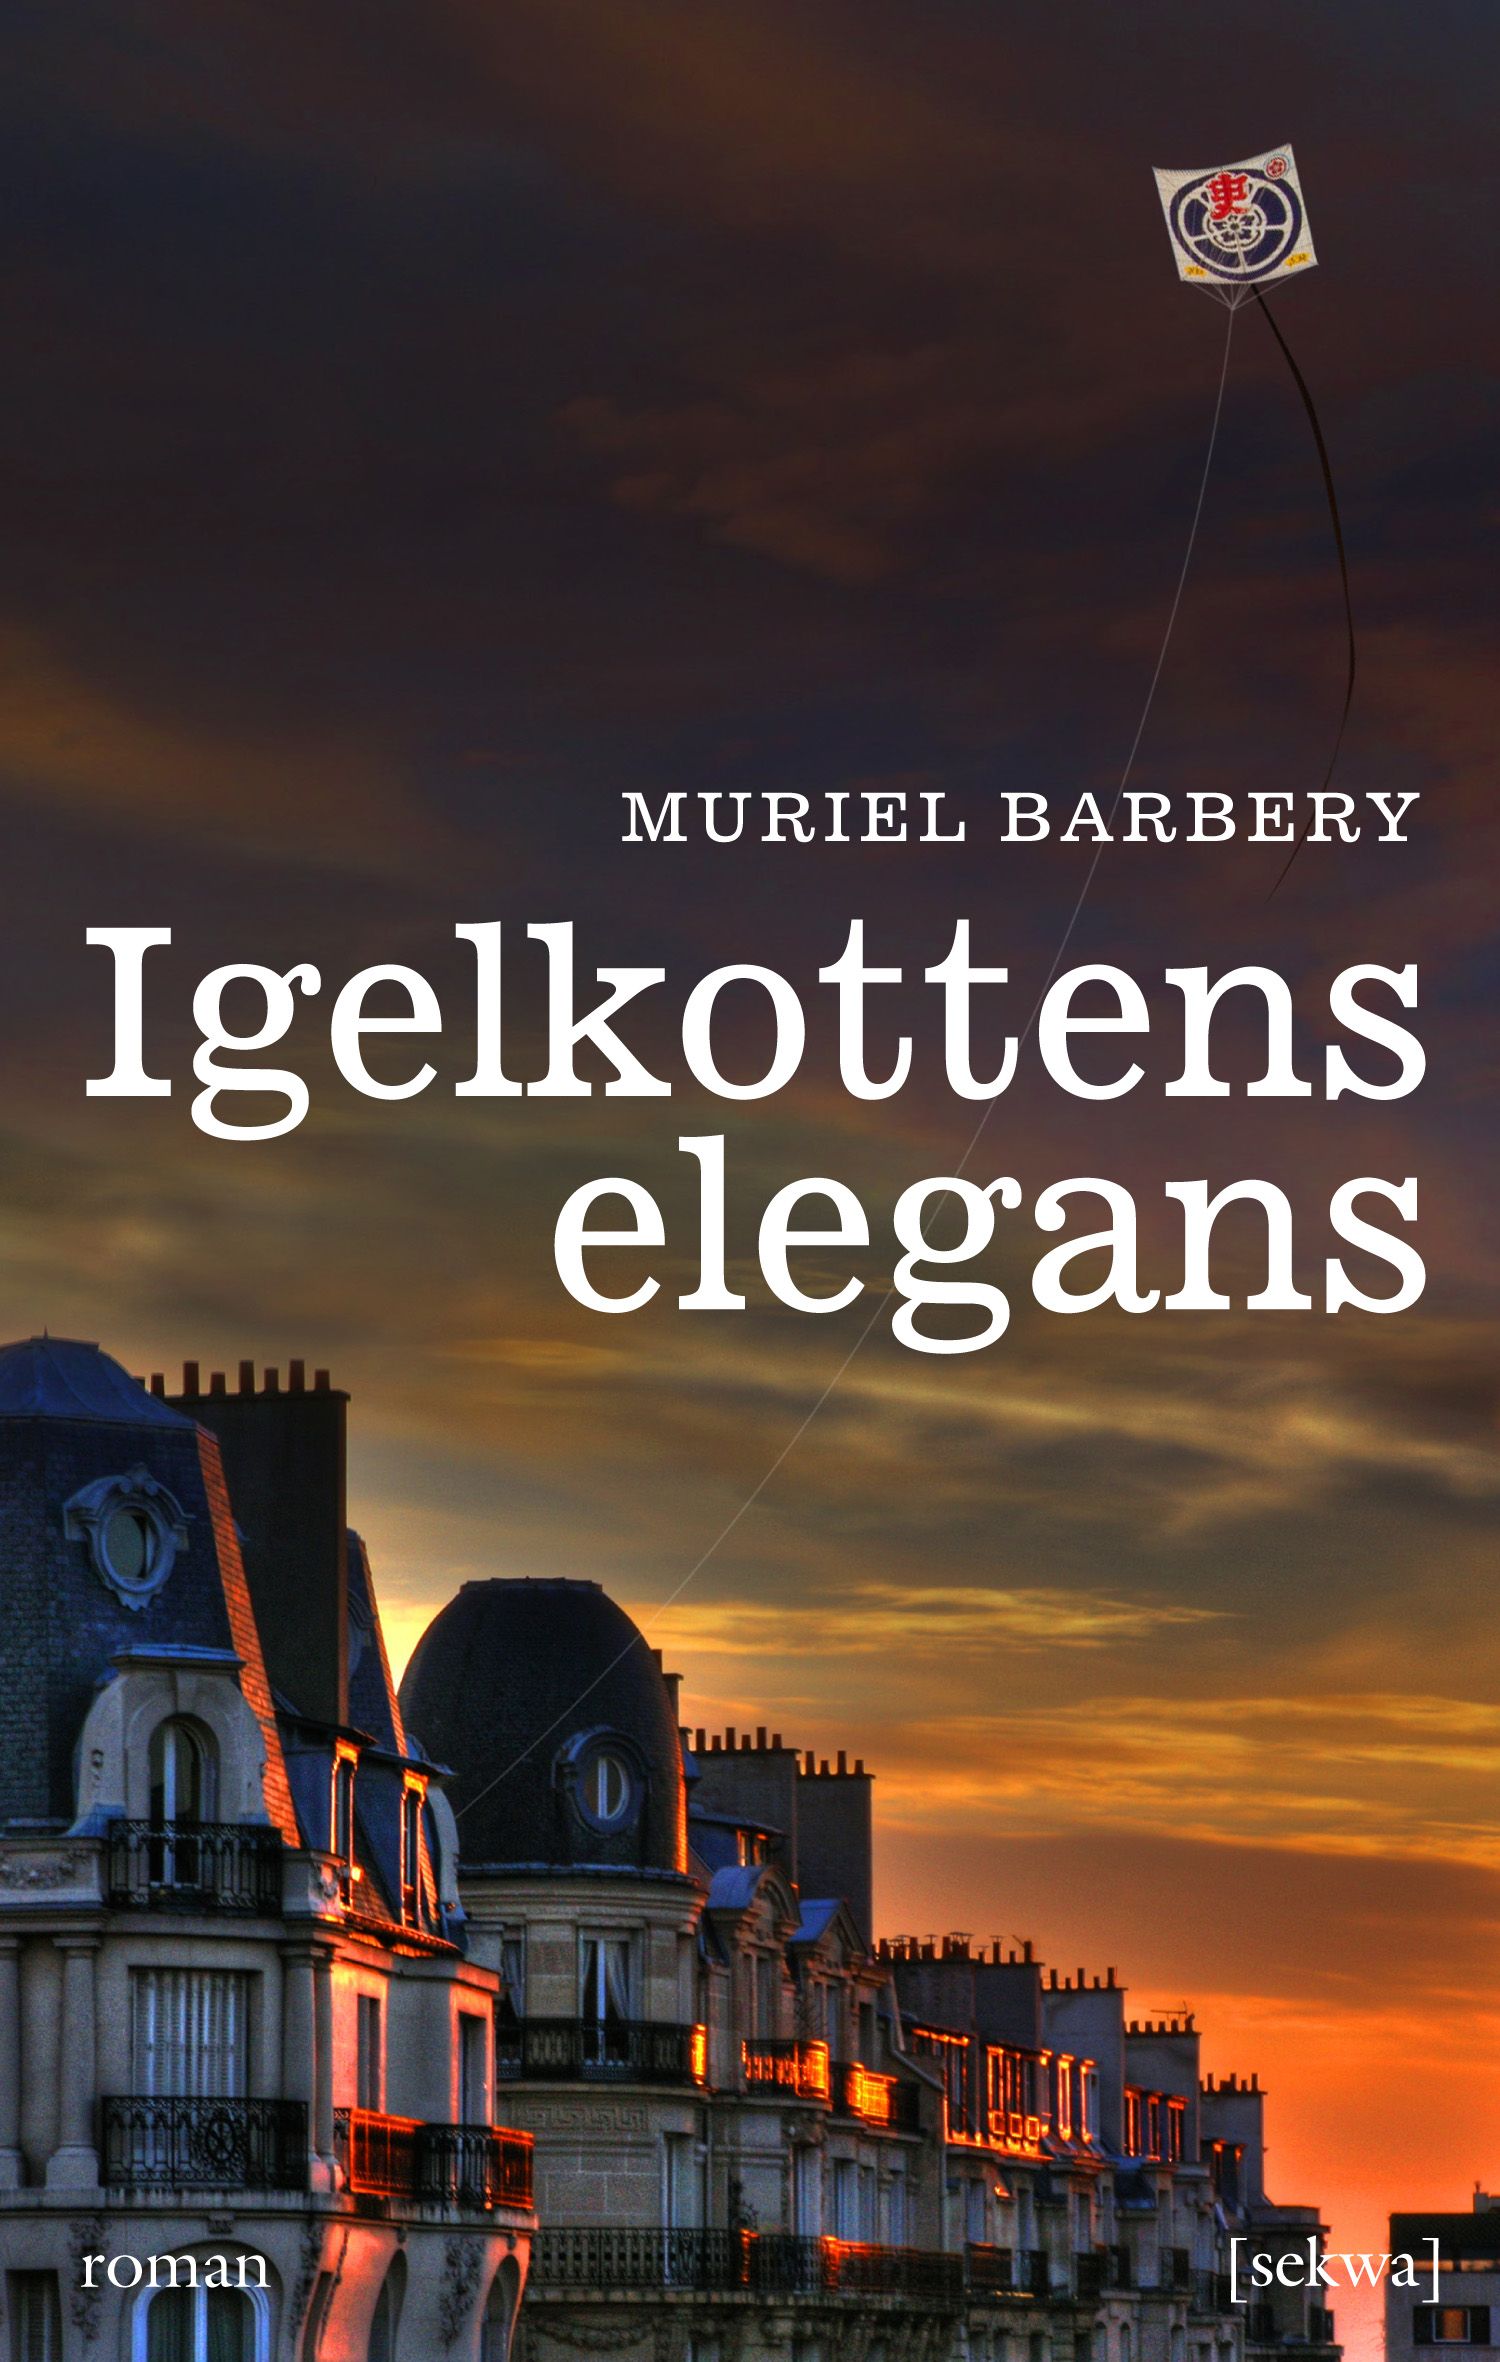 Igelkottens elegans, e-bog af Muriel Barbery